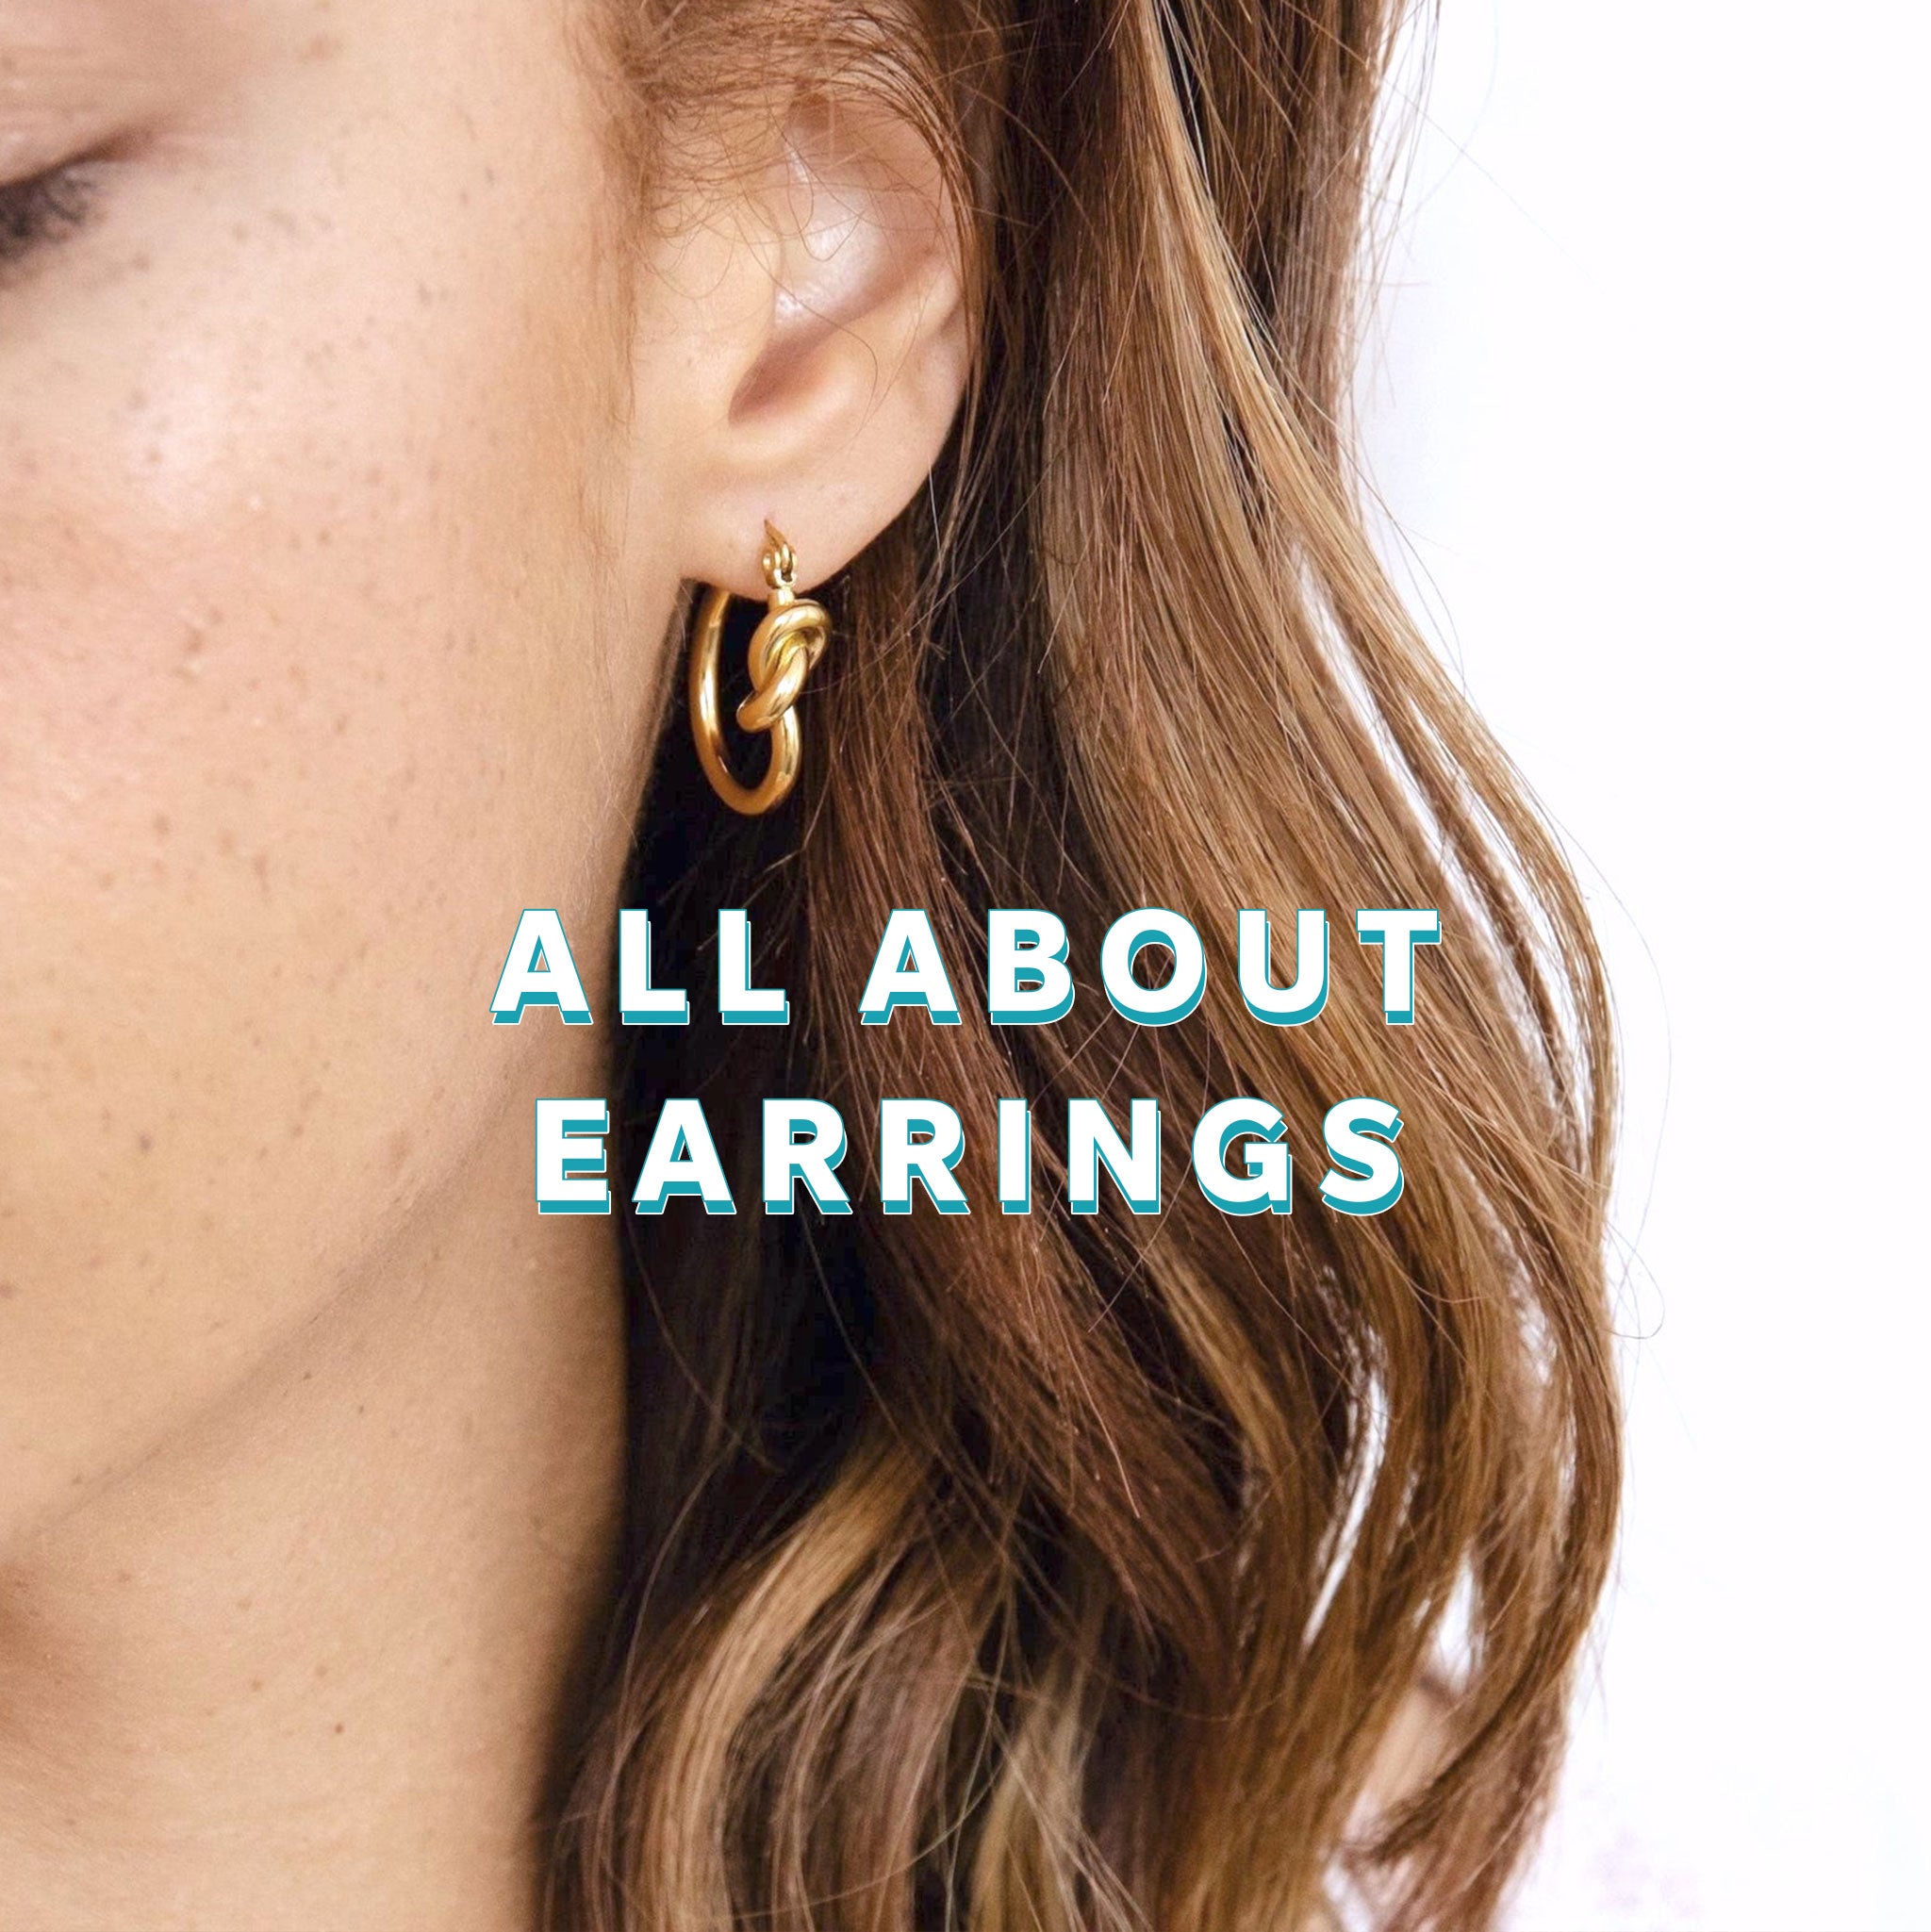 Earrings Education